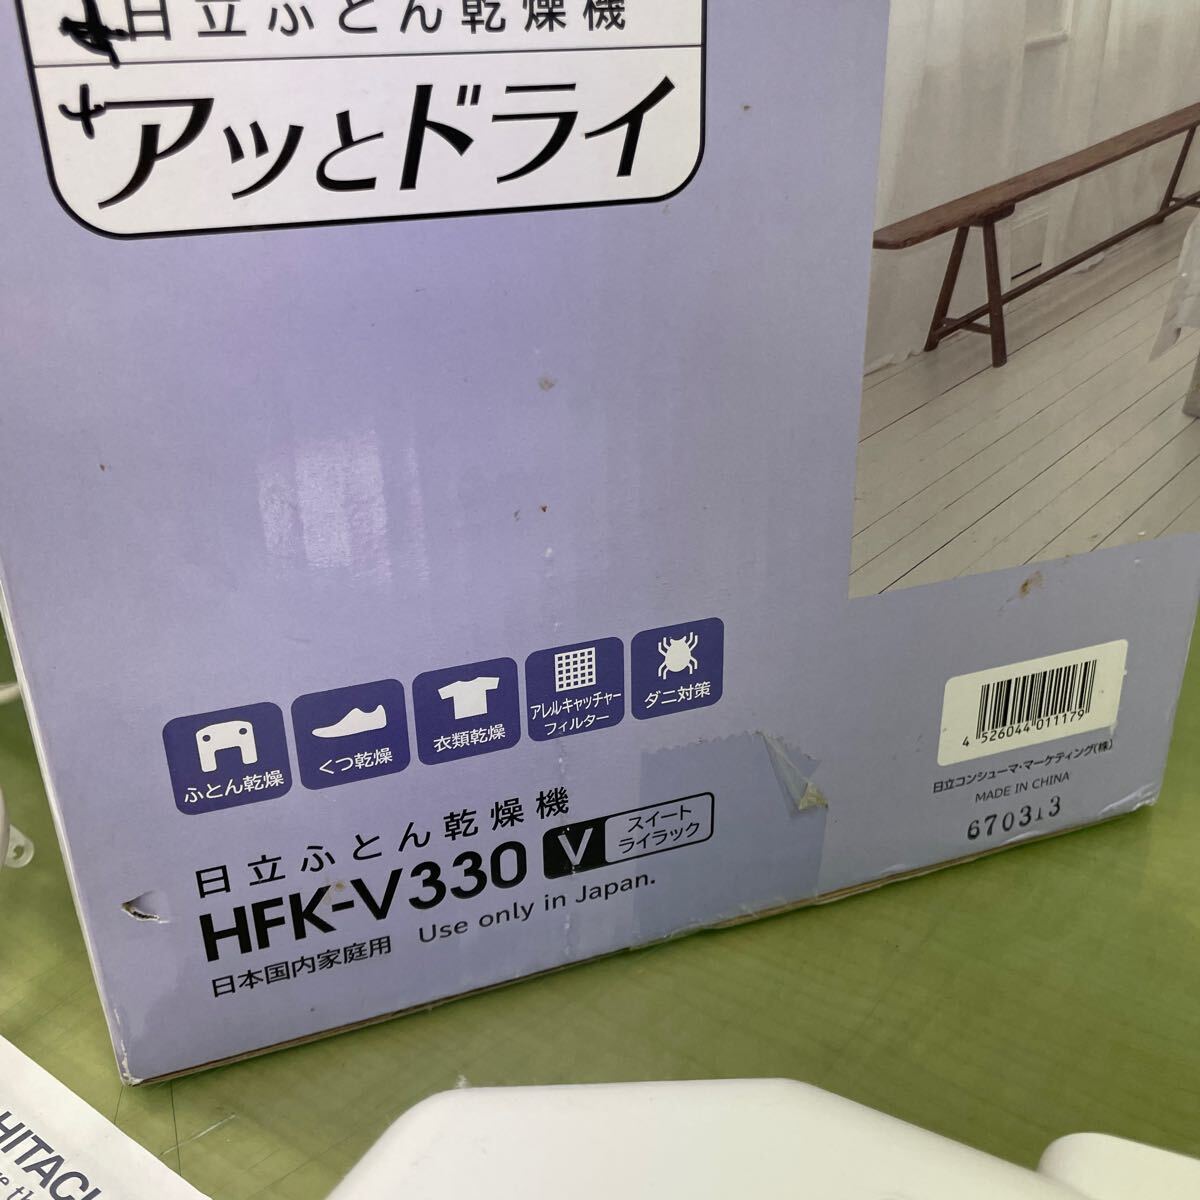 *HITACHI Hitachi futon сушильная машина модель HFK-V330 не использовался товар 